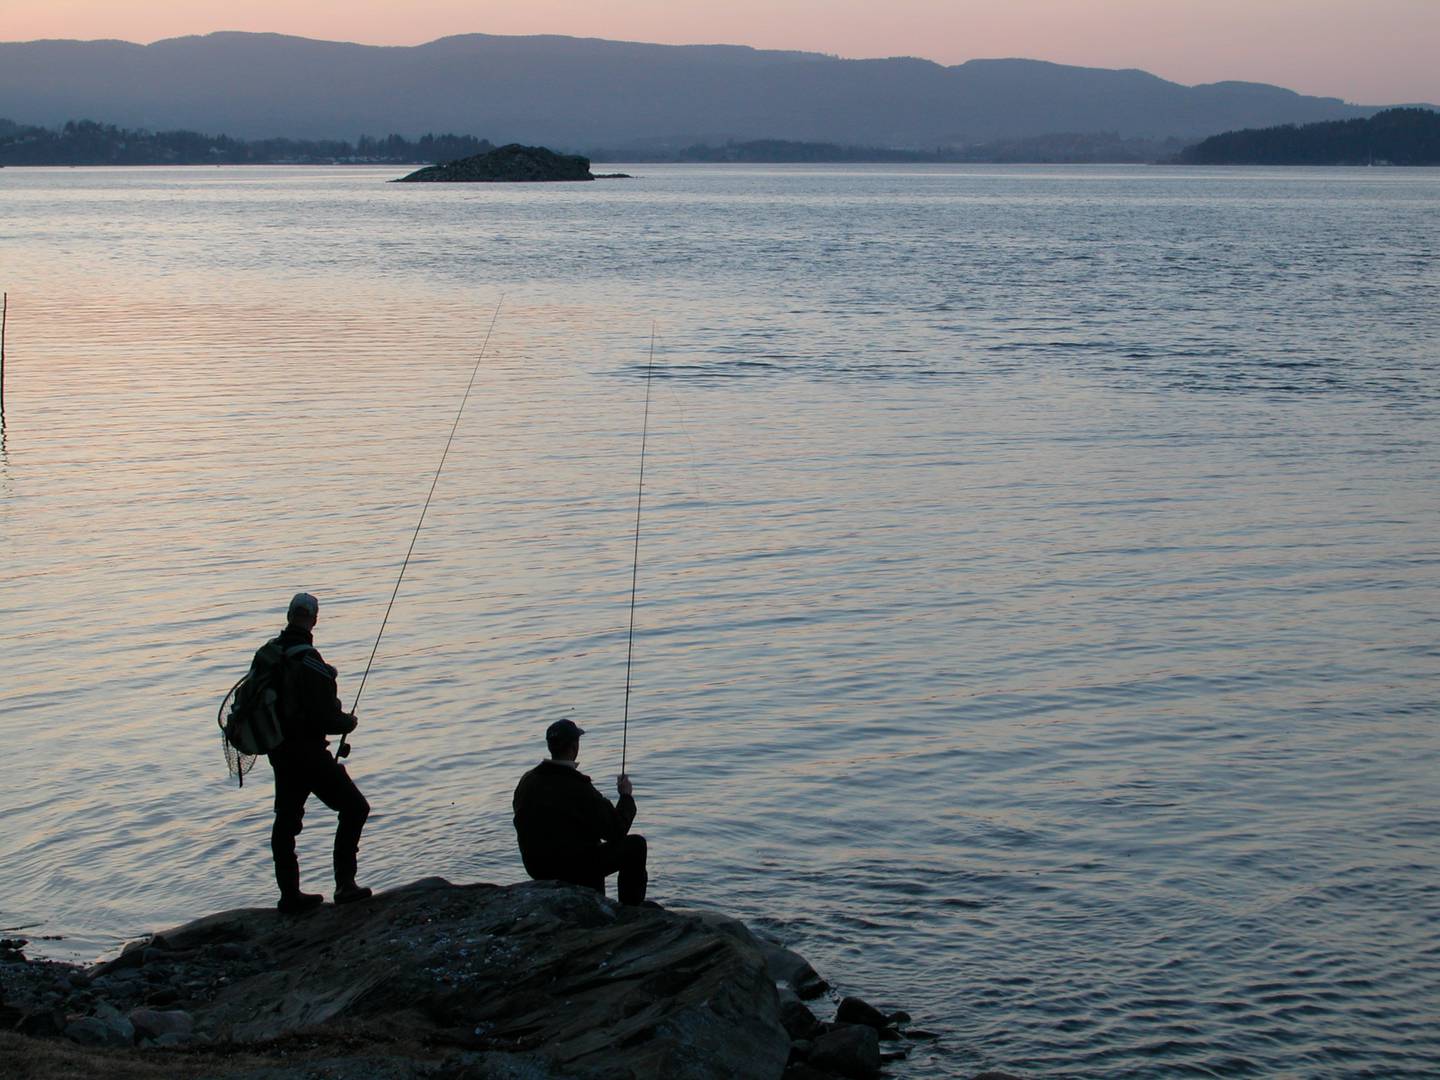 Fritidsfiske er en populær aktivitet i Norge, men langt fra all fisking skjer på en reglementert måte, konstaterer Miljødirektoratet. Fiskere må blant annet forholde seg til at det er minstemål for en rekke fiskeslag.